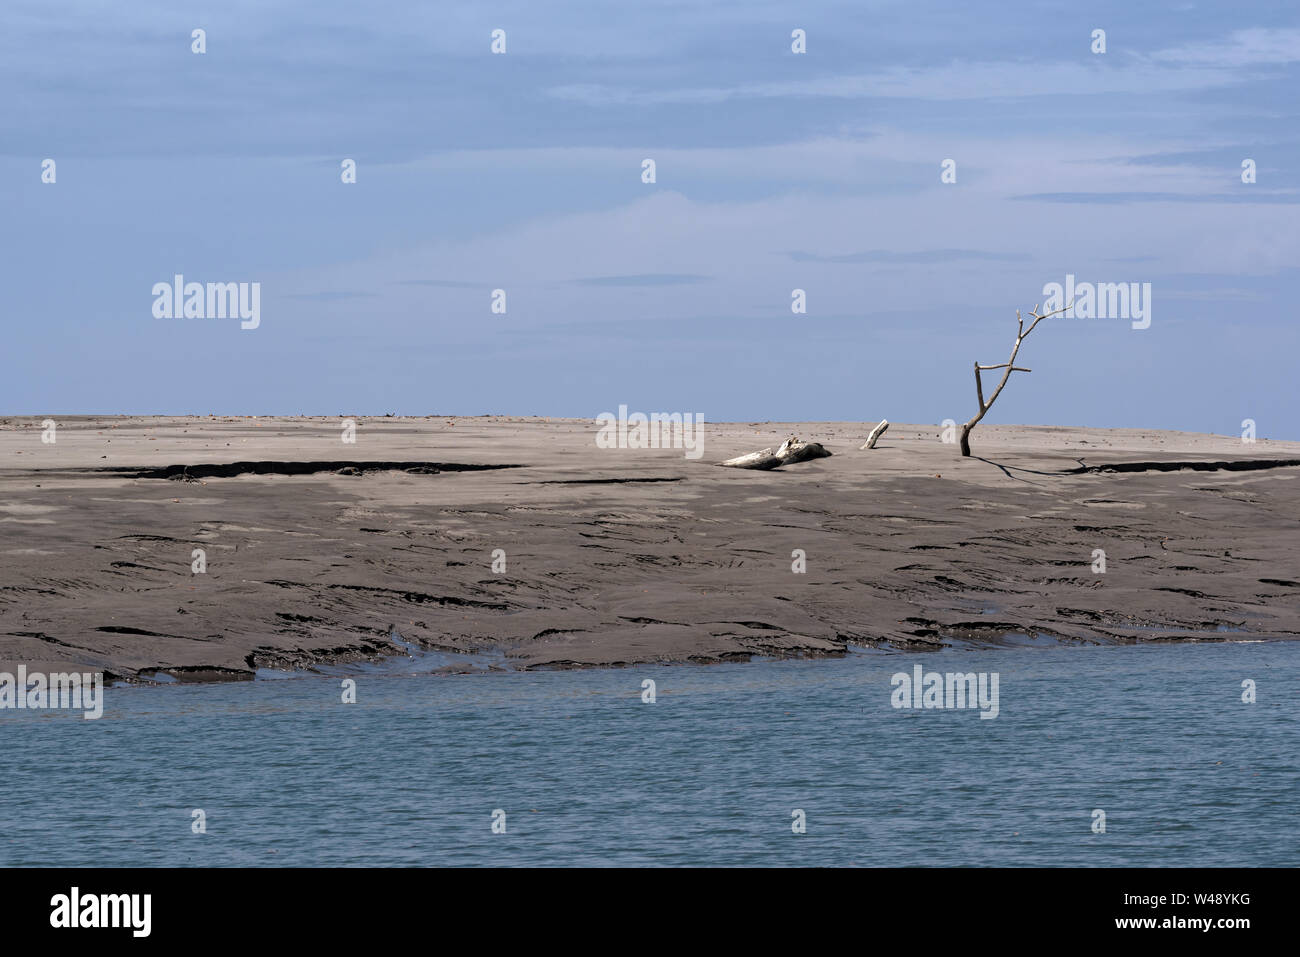 Toter Baum auf einer Sandbank an der Mündung des Rio Platana, l Panama Stockfoto